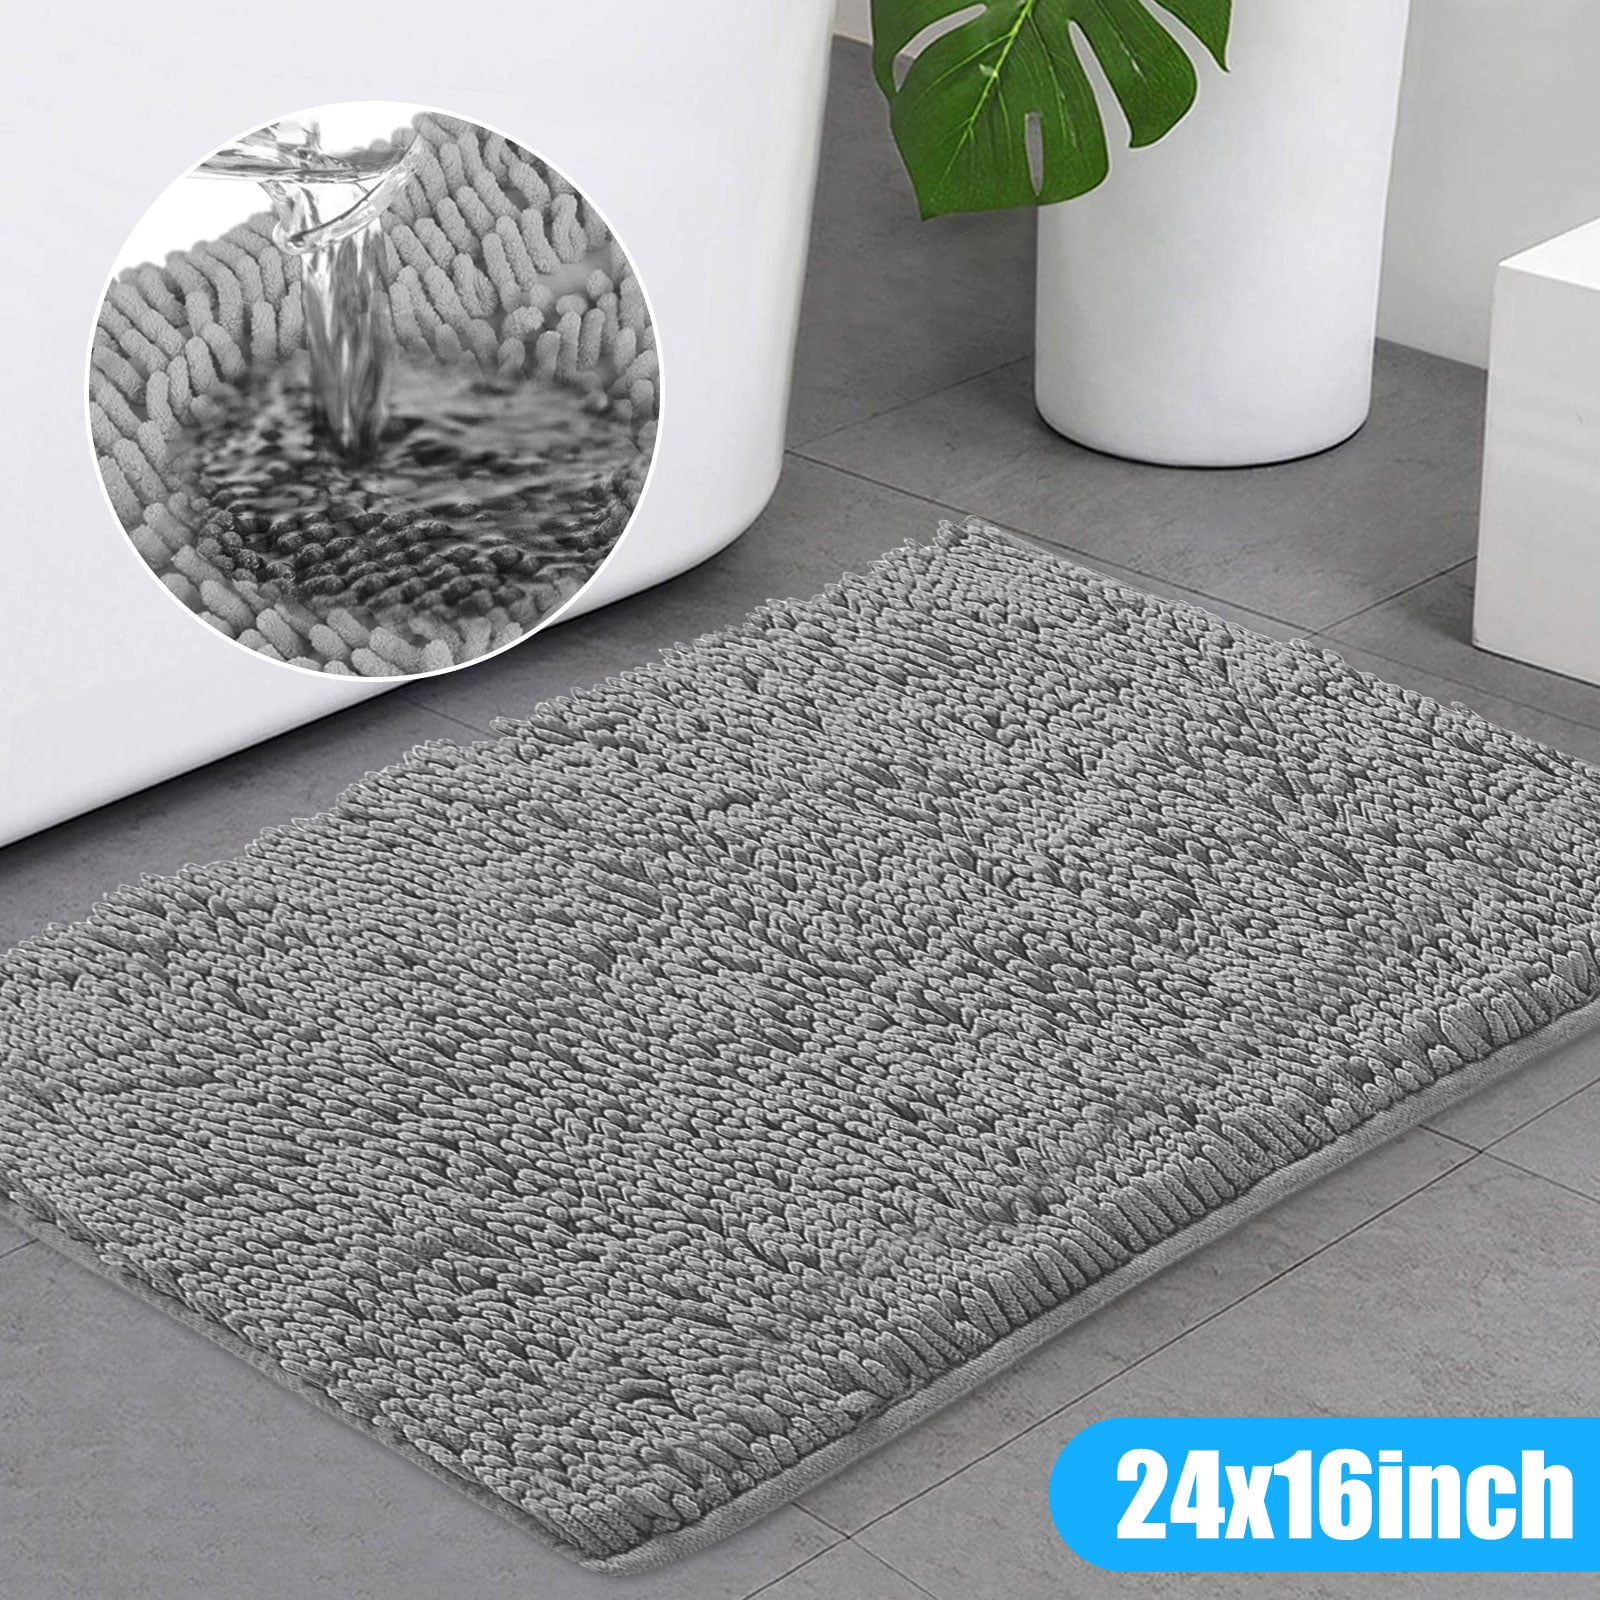 Water-absorbent Doormat Bathroom Carpet Creative Design Floor Mat Home Decor Rug 